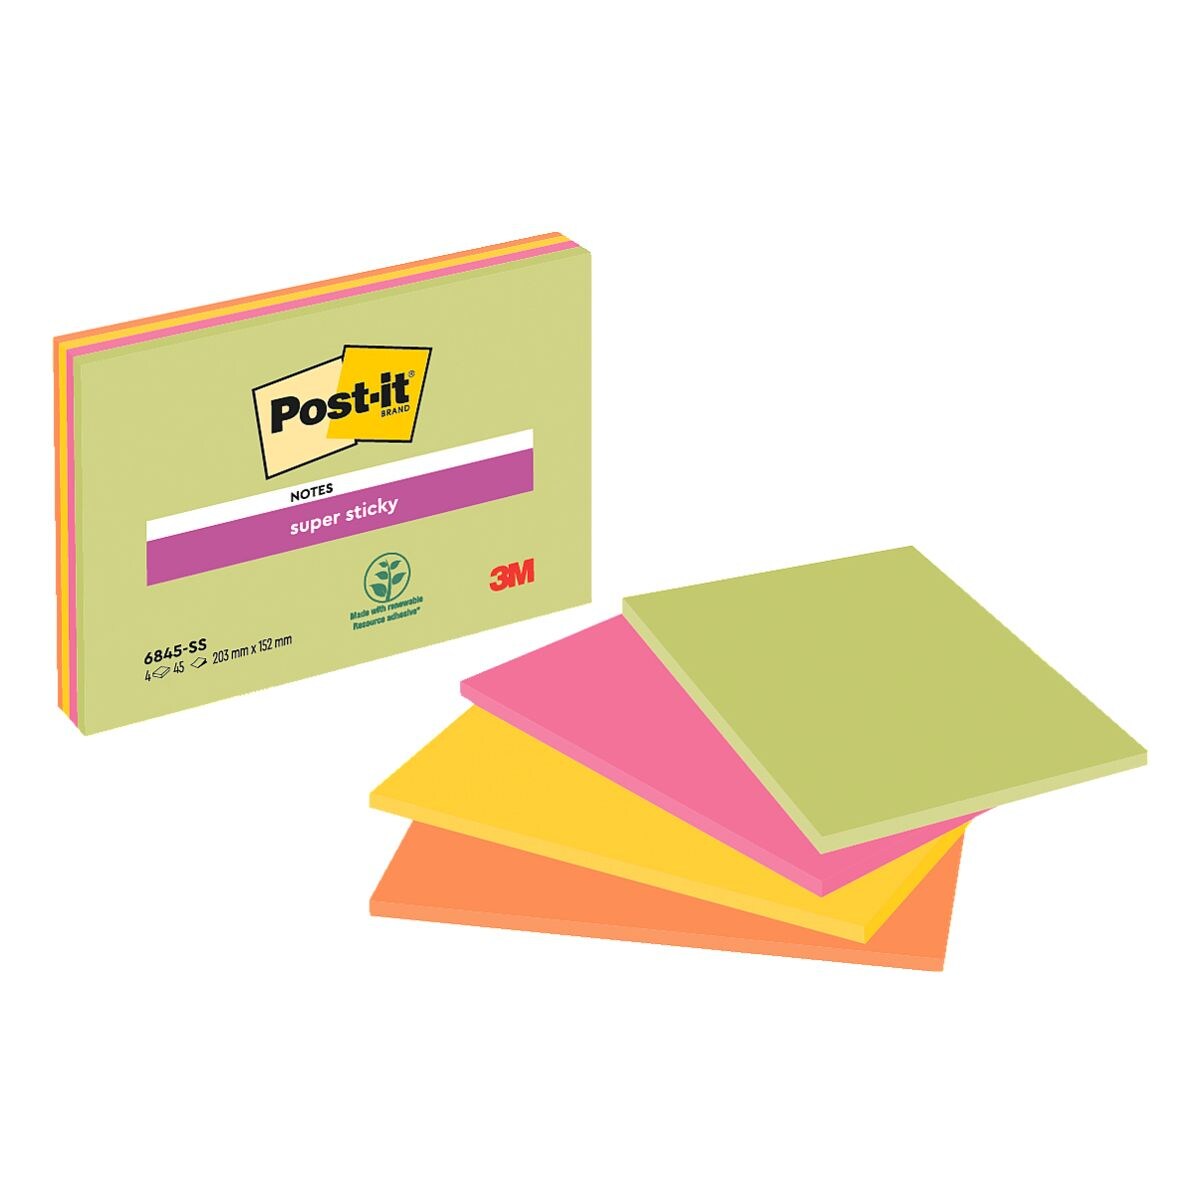 4x Post-it Super Sticky Meeting Notes XXXL blok herkleefbare notes  20,3 x 15,2 cm, 180 bladen (totaal), gesorteerd in kleuren